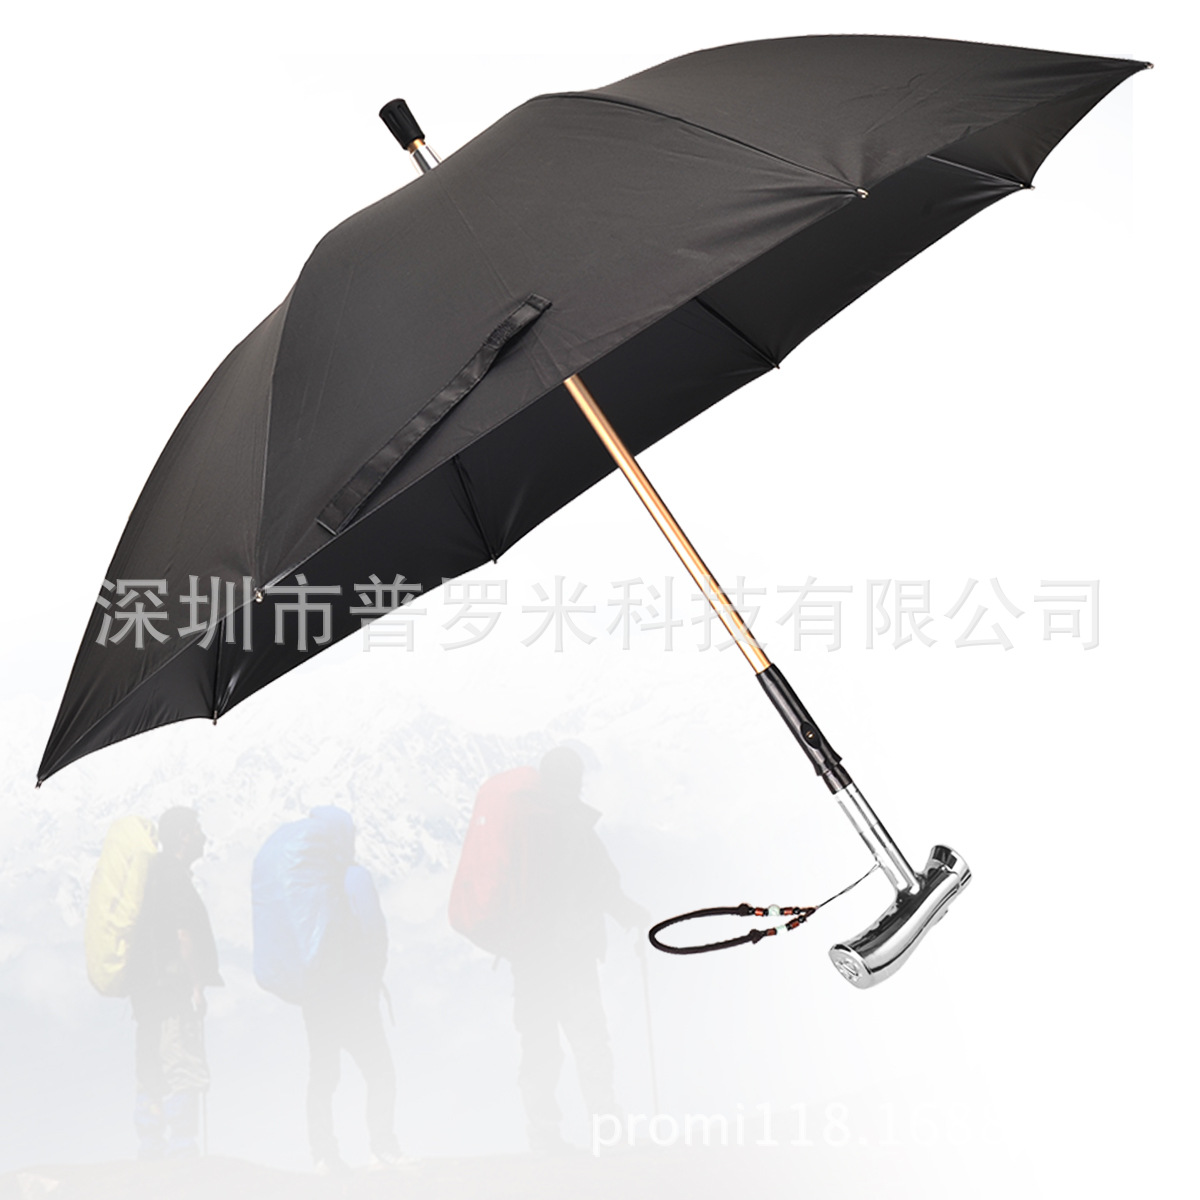 遇险报警 家人的保护伞智能拐杖雨伞一伞多用 手摇发电拐杖雨伞6